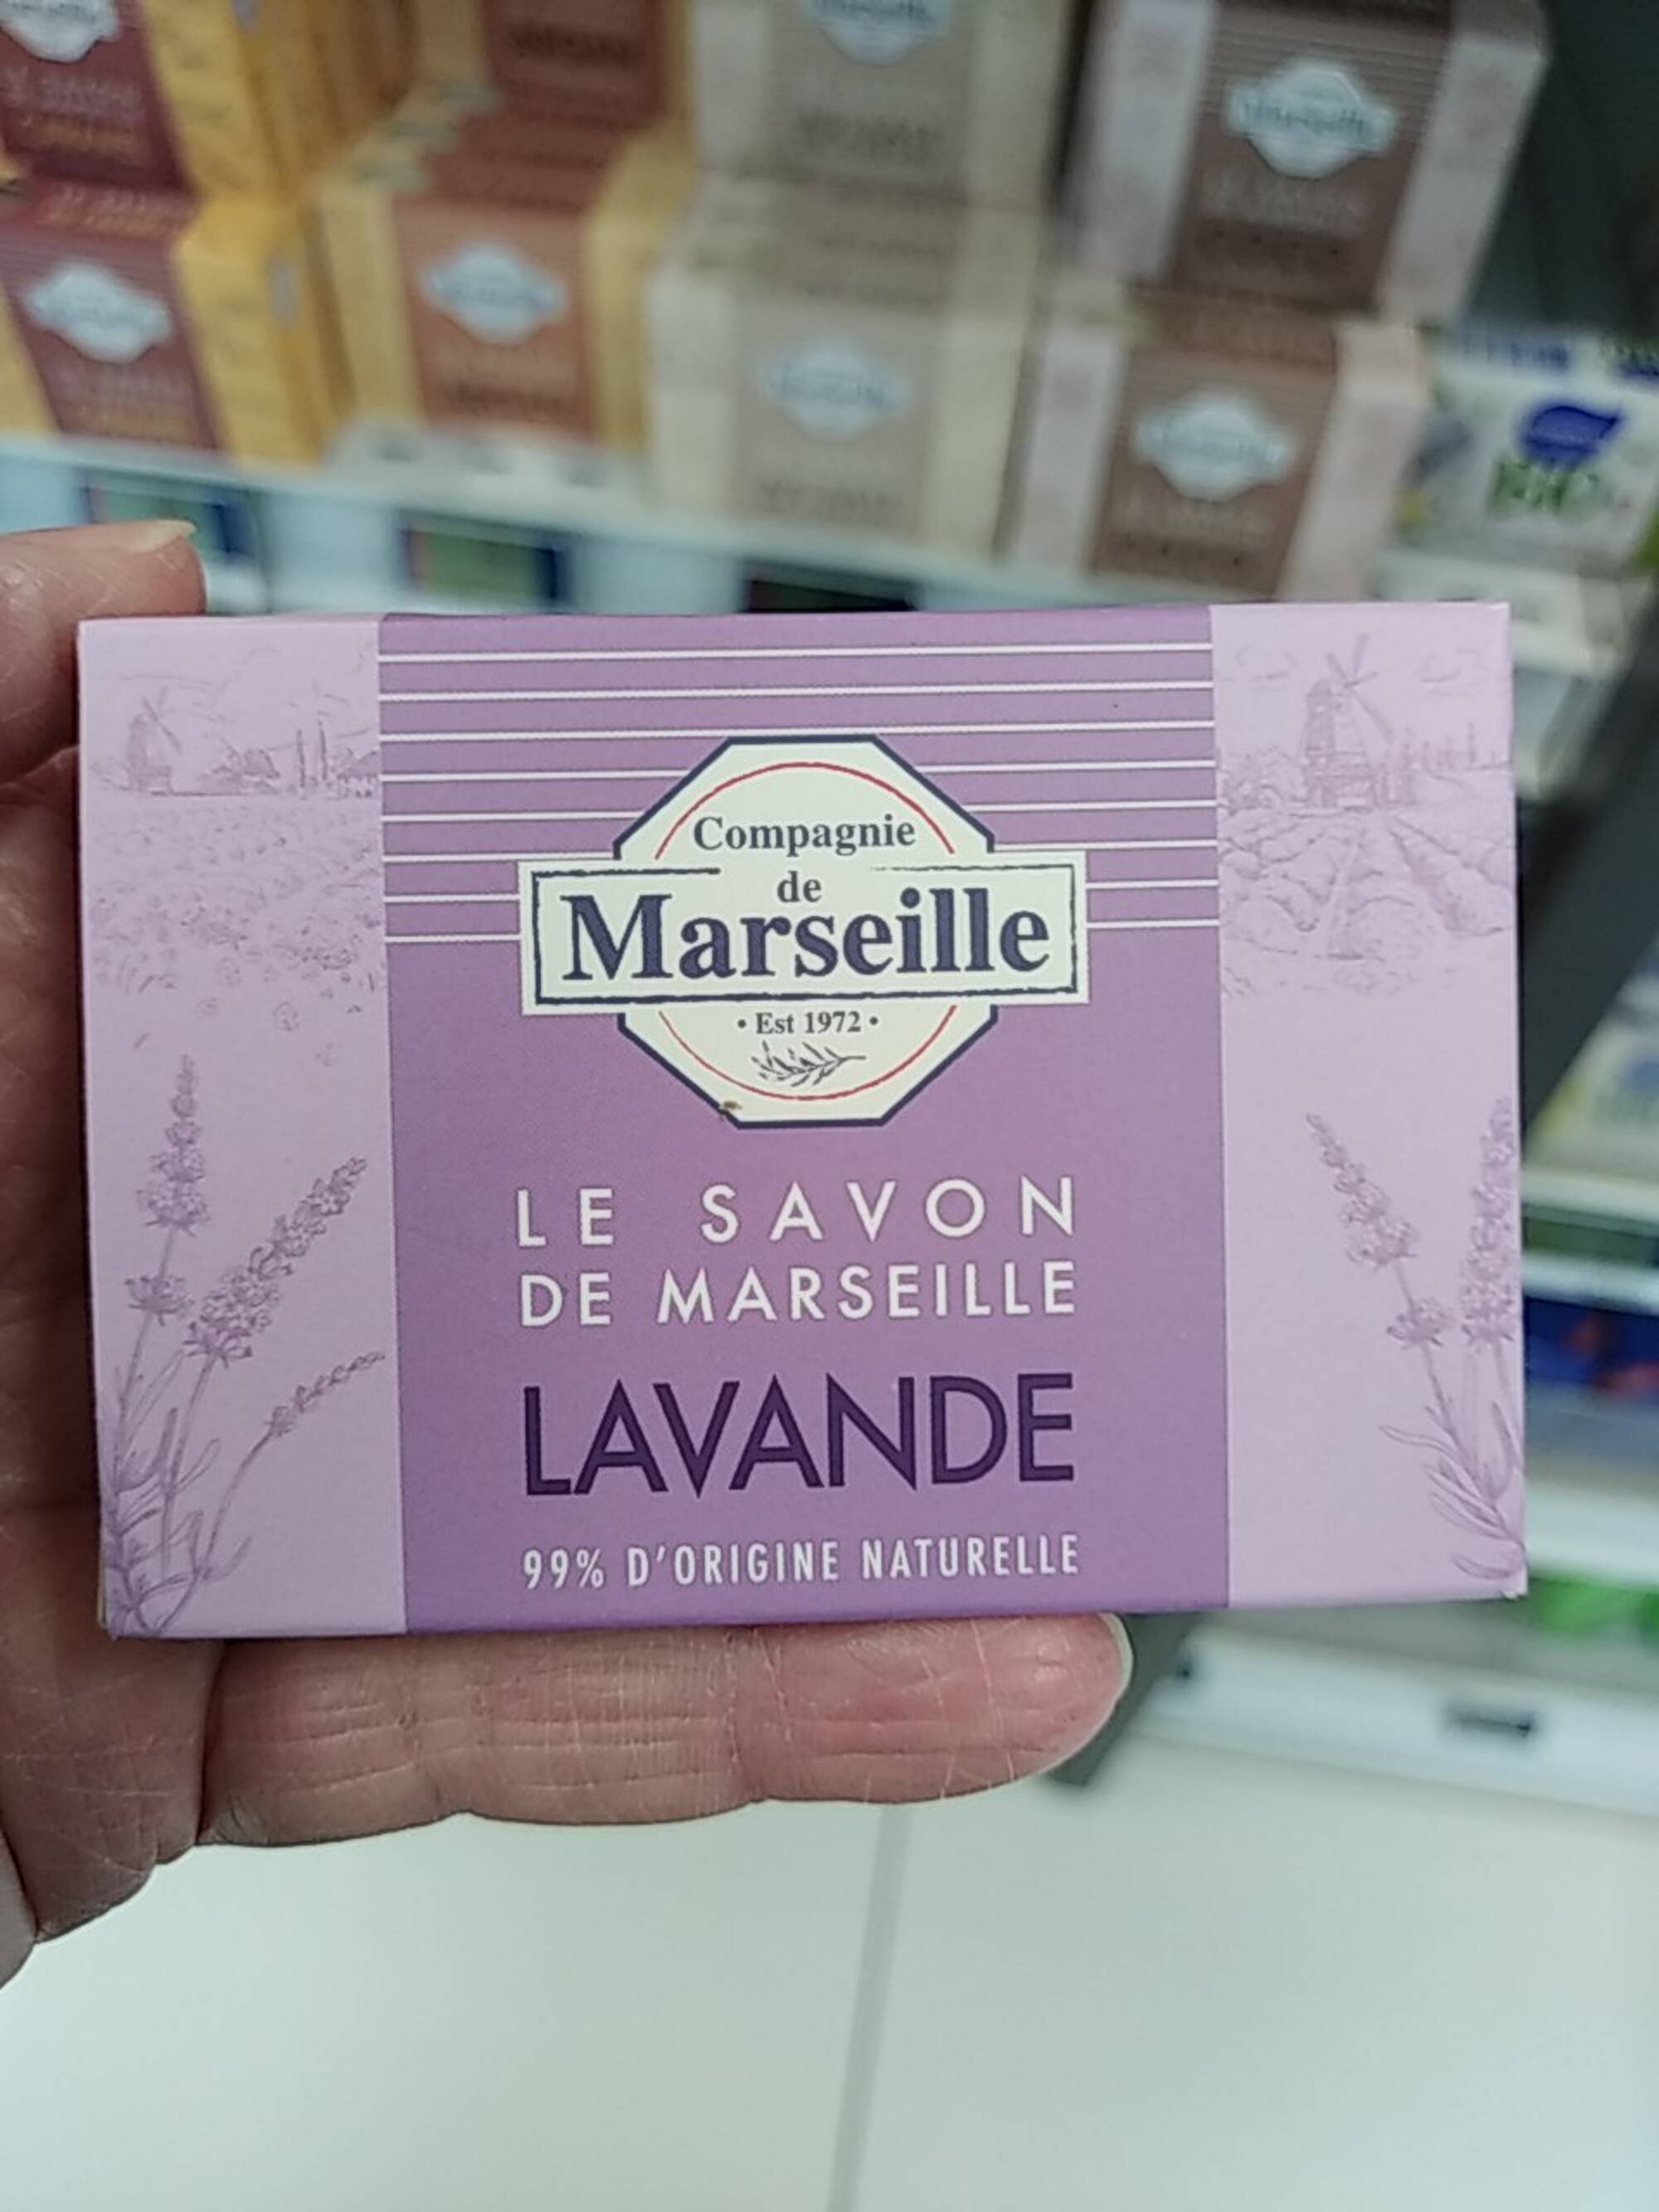 COMPAGNIE DE MARSEILLE - Lavande - Le savon de Marseille 